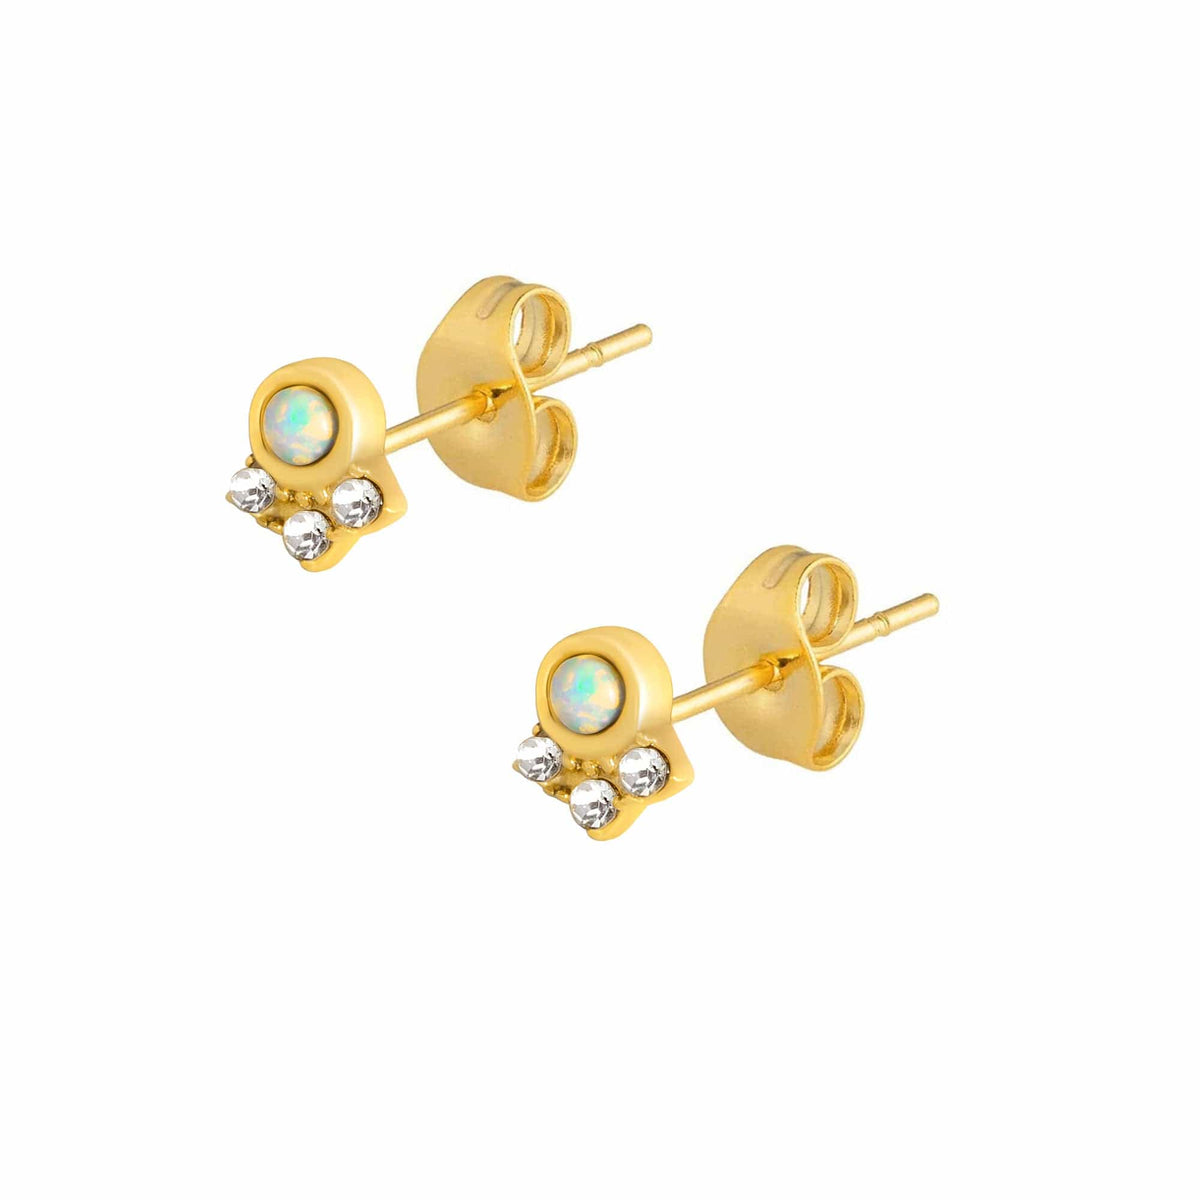 BohoMoon Stainless Steel Indus Opal Stud Earrings Gold